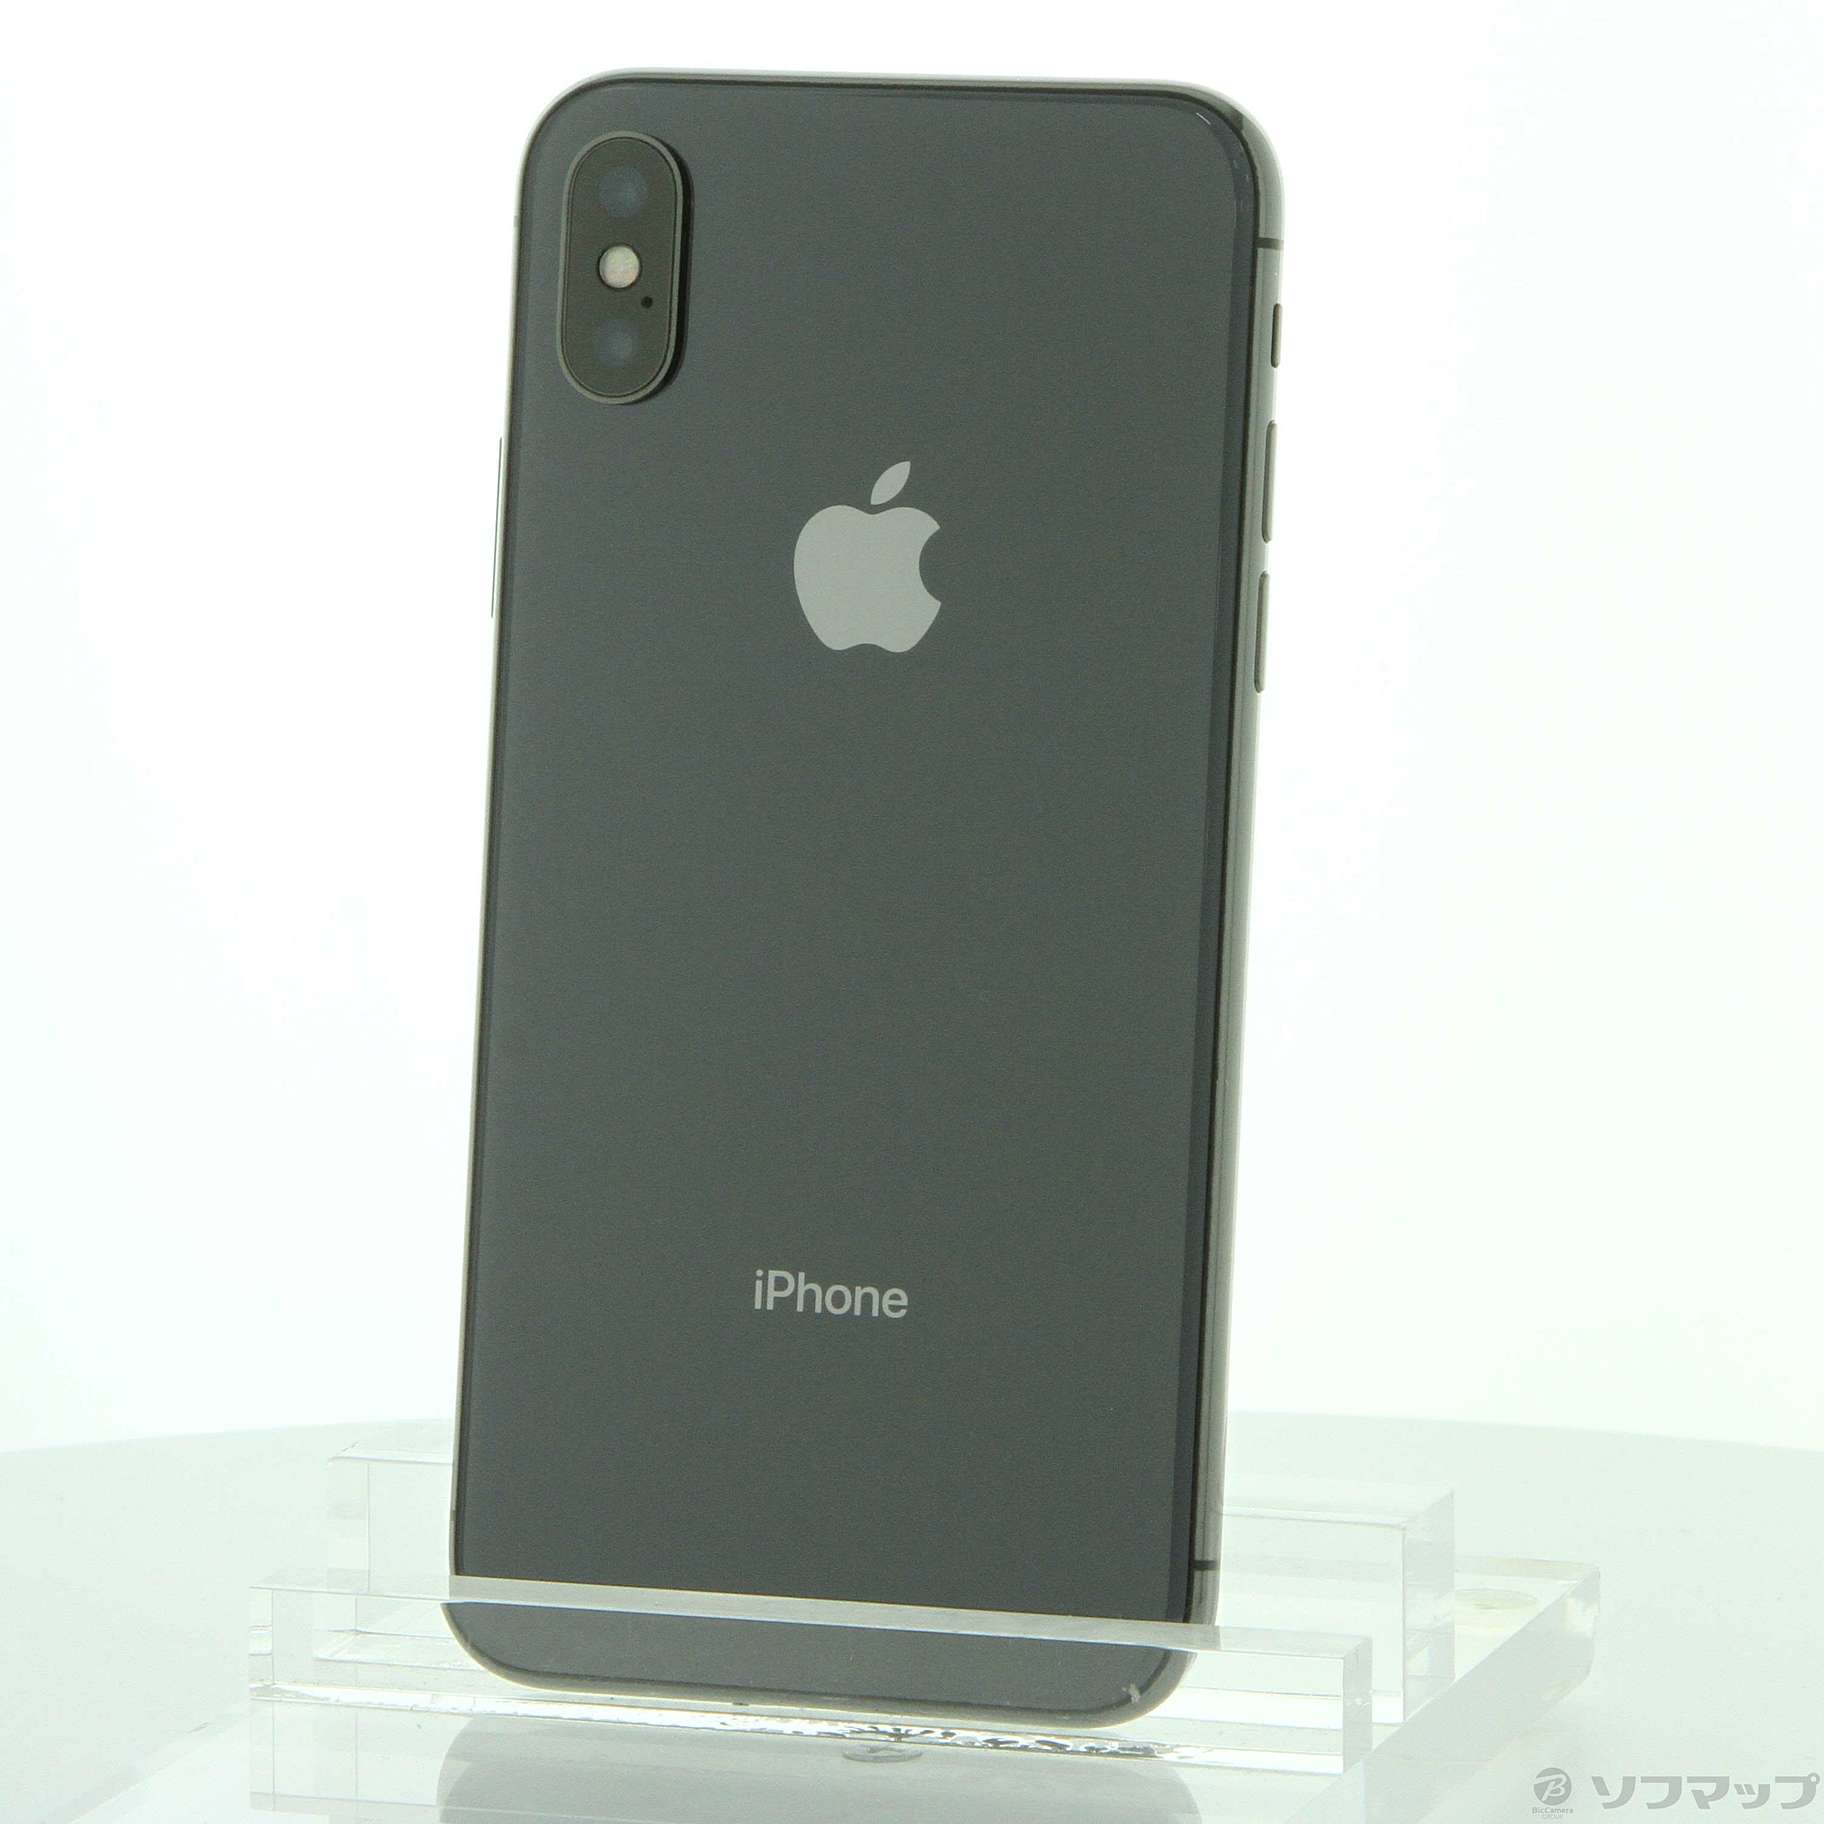 iPhoneX 256GB スペースグレイスマートフォン本体 - スマートフォン本体